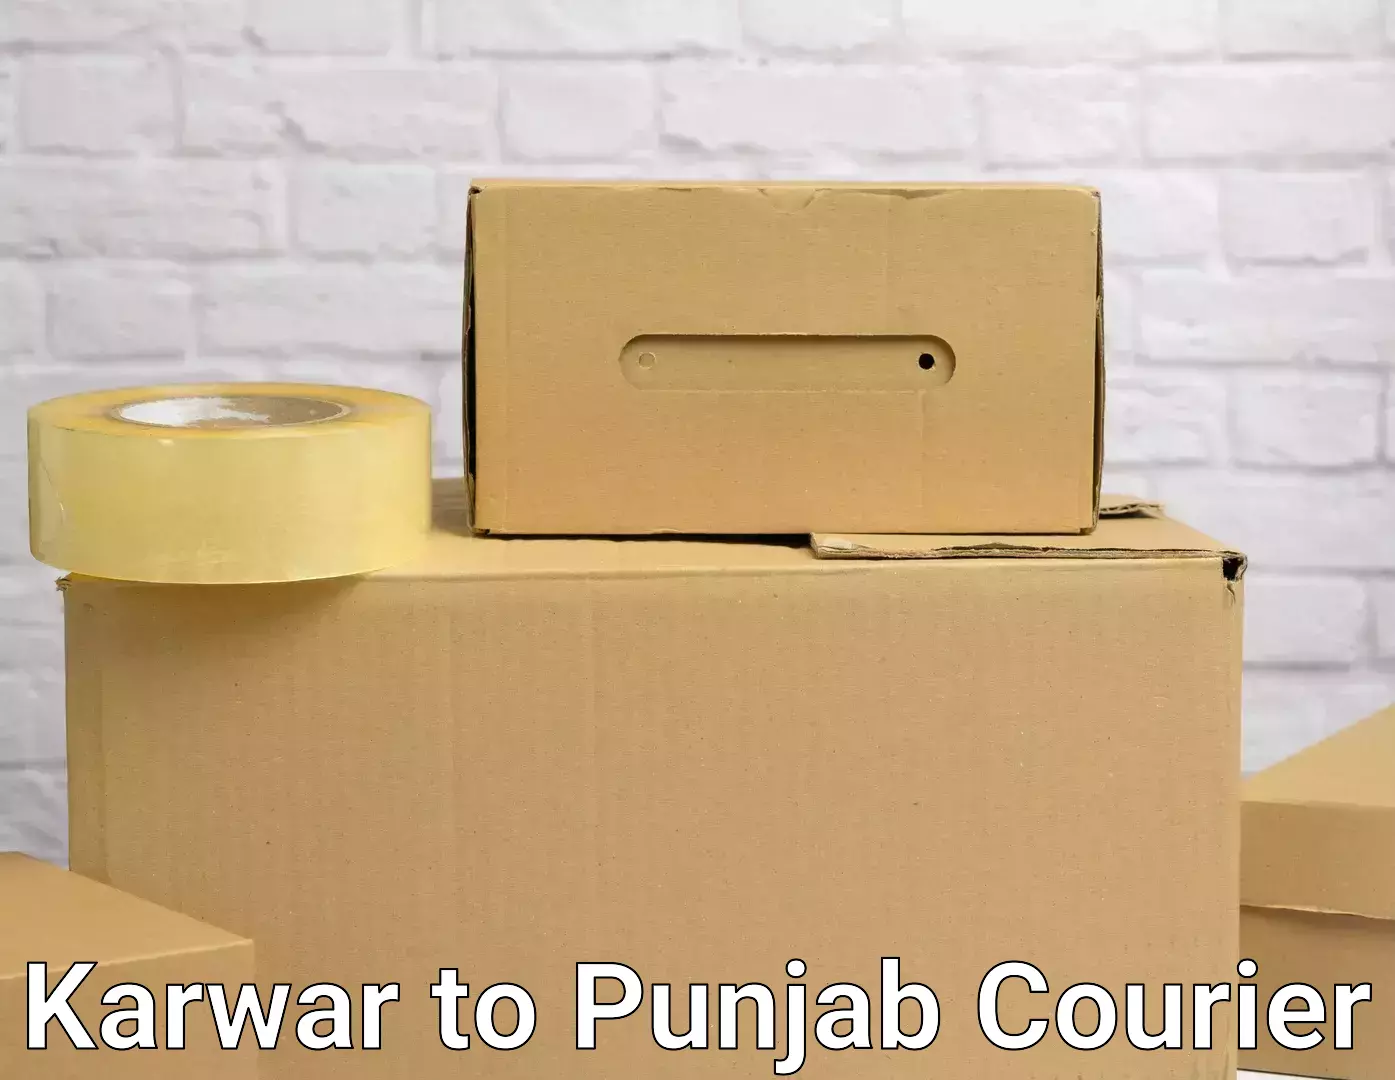 Furniture moving experts in Karwar to Fatehgarh Sahib